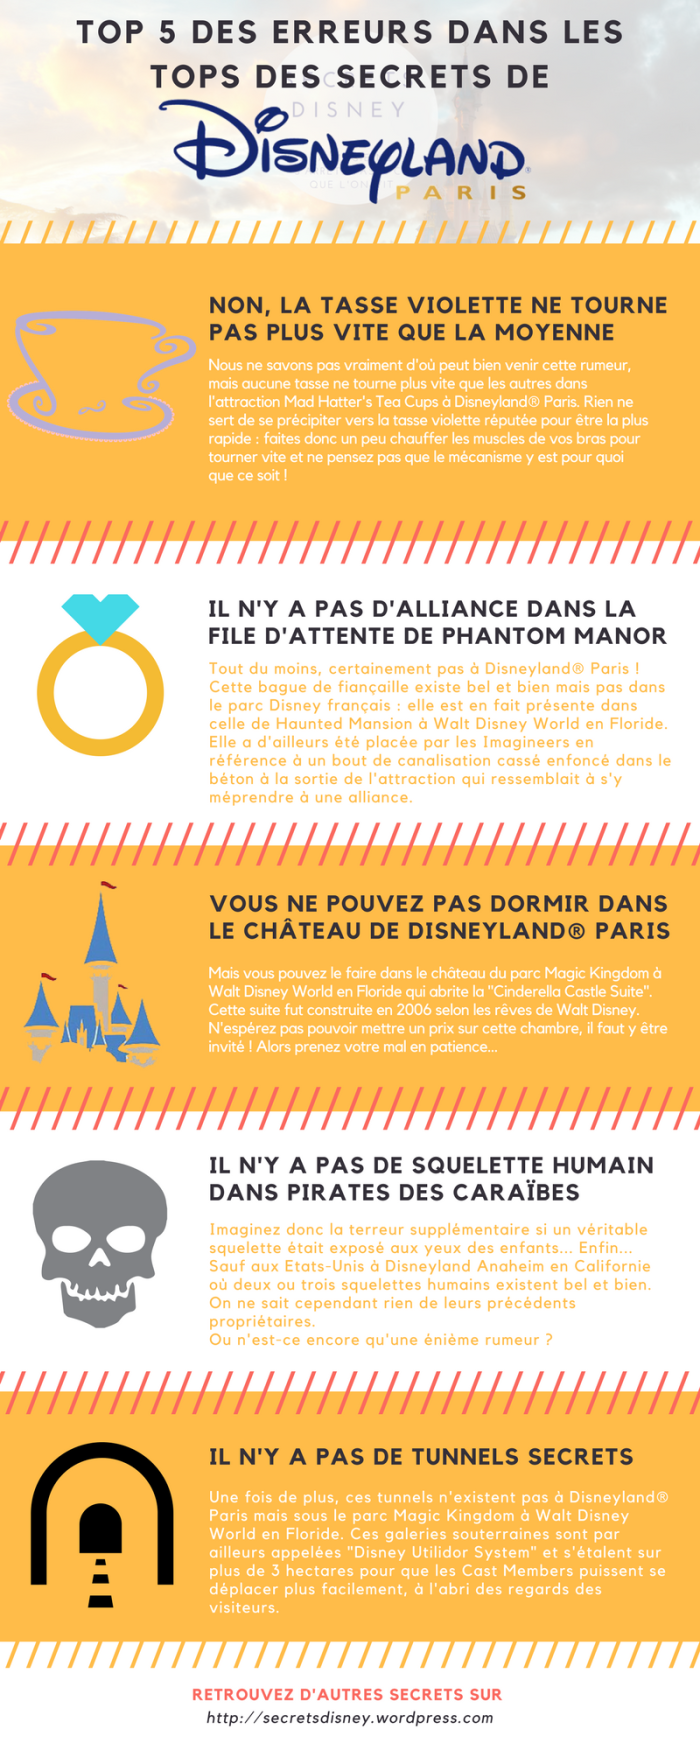 Secrets Disney - Les Secrets et Détails de Disneyland Paris [Blog]  Top-5-des-erreurs-dans-les-tops-des-secrets-de